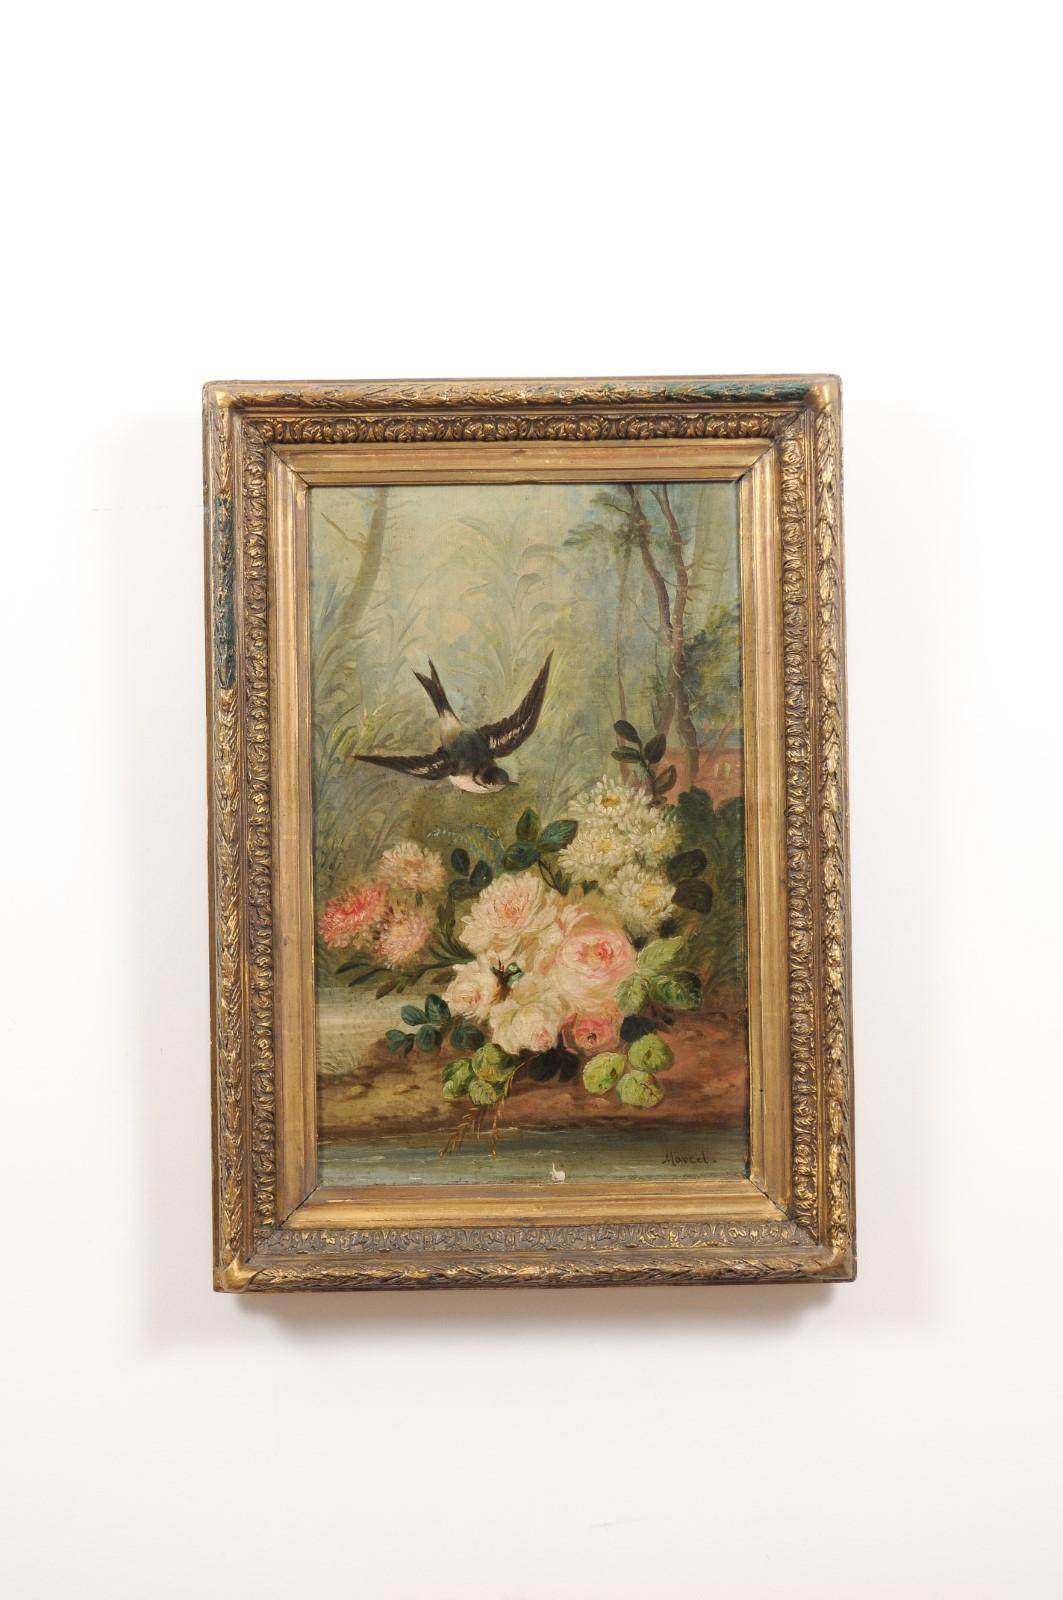 Une peinture à l'huile sur toile d'époque Napoléon III du milieu du 19ème siècle, avec oiseau et roses dans un cadre en bois doré. Créée en France au début du règne de l'empereur Napoléon III, cette peinture à l'huile sur toile représente un oiseau